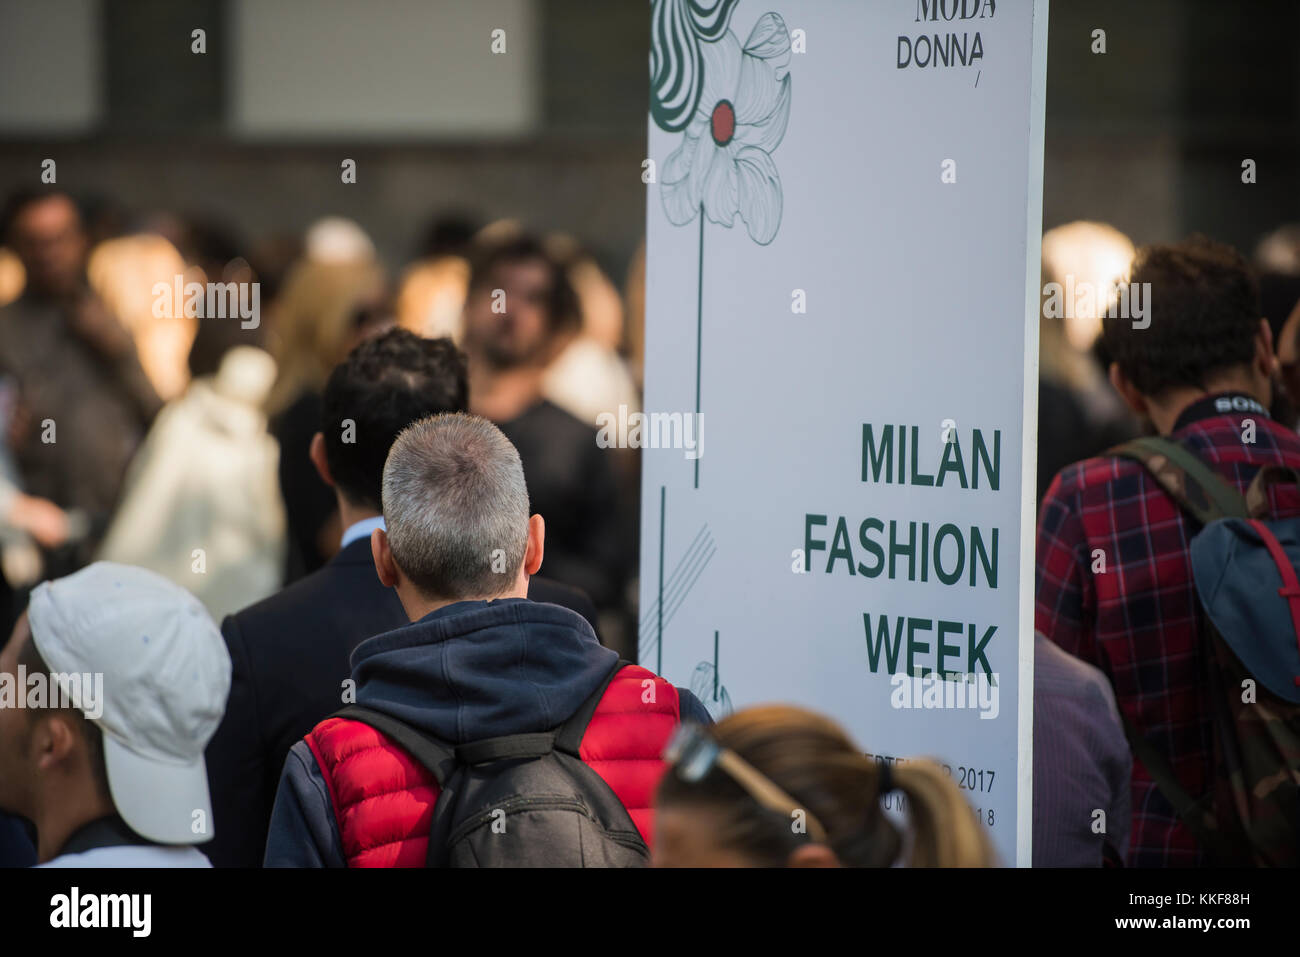 Milan, Italie - 22 septembre 2017 : les gens à l'entrée d'un défilé de mode pendant la Fashion Week de Milan. Banque D'Images